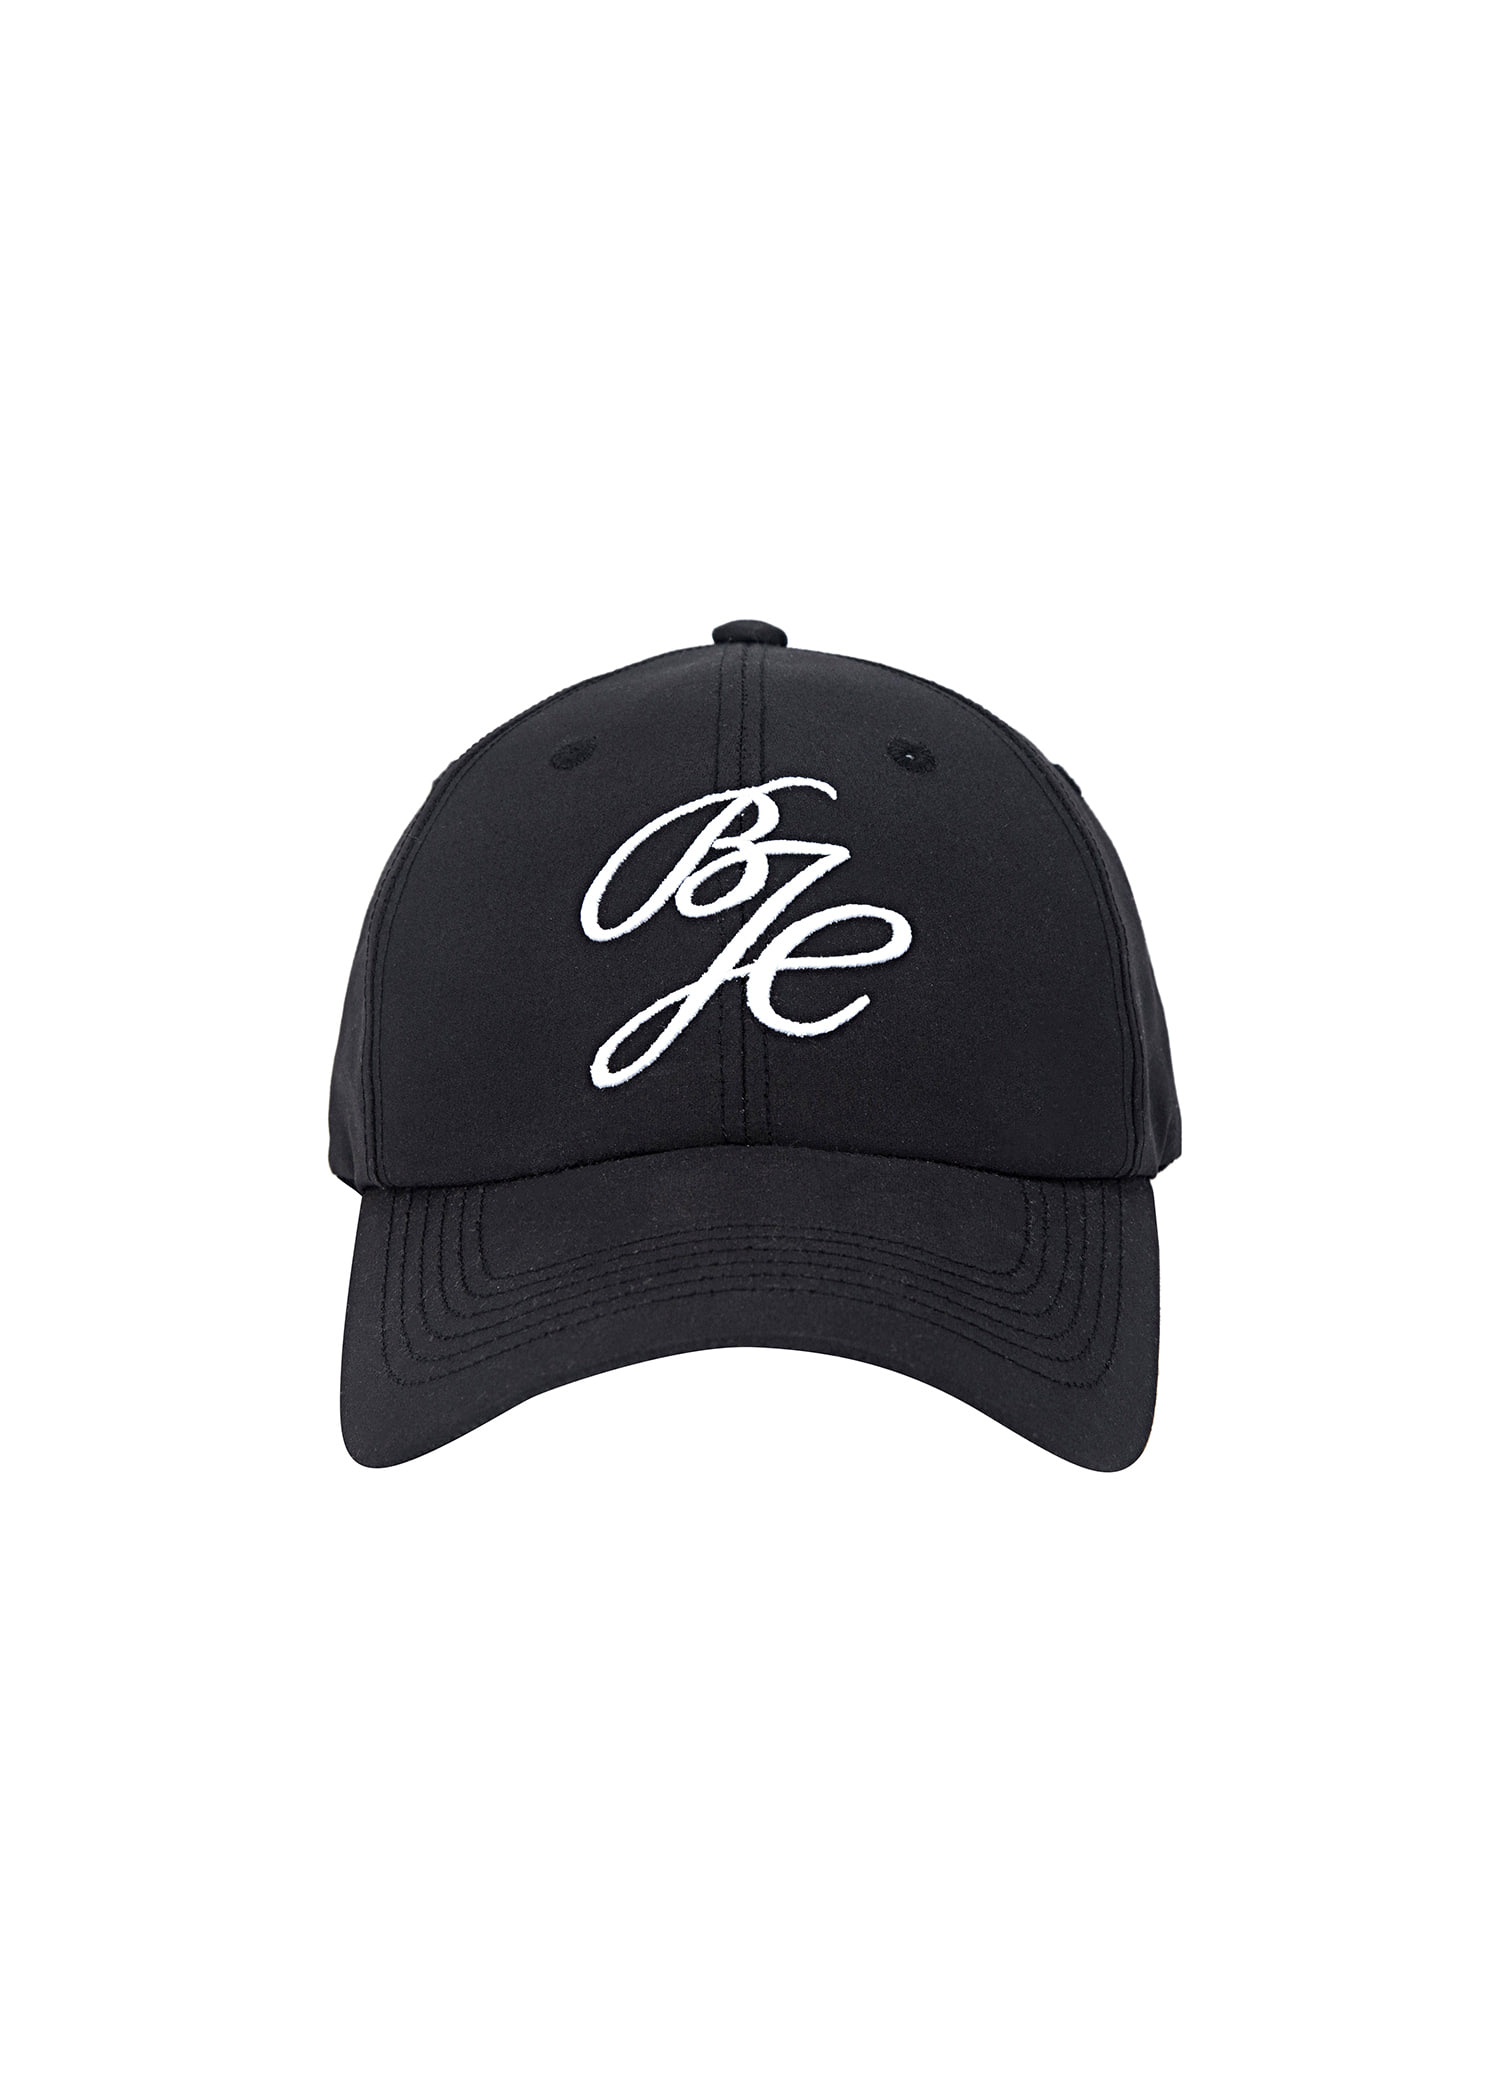 [블루제이너클럽]BJC baseball cap Black